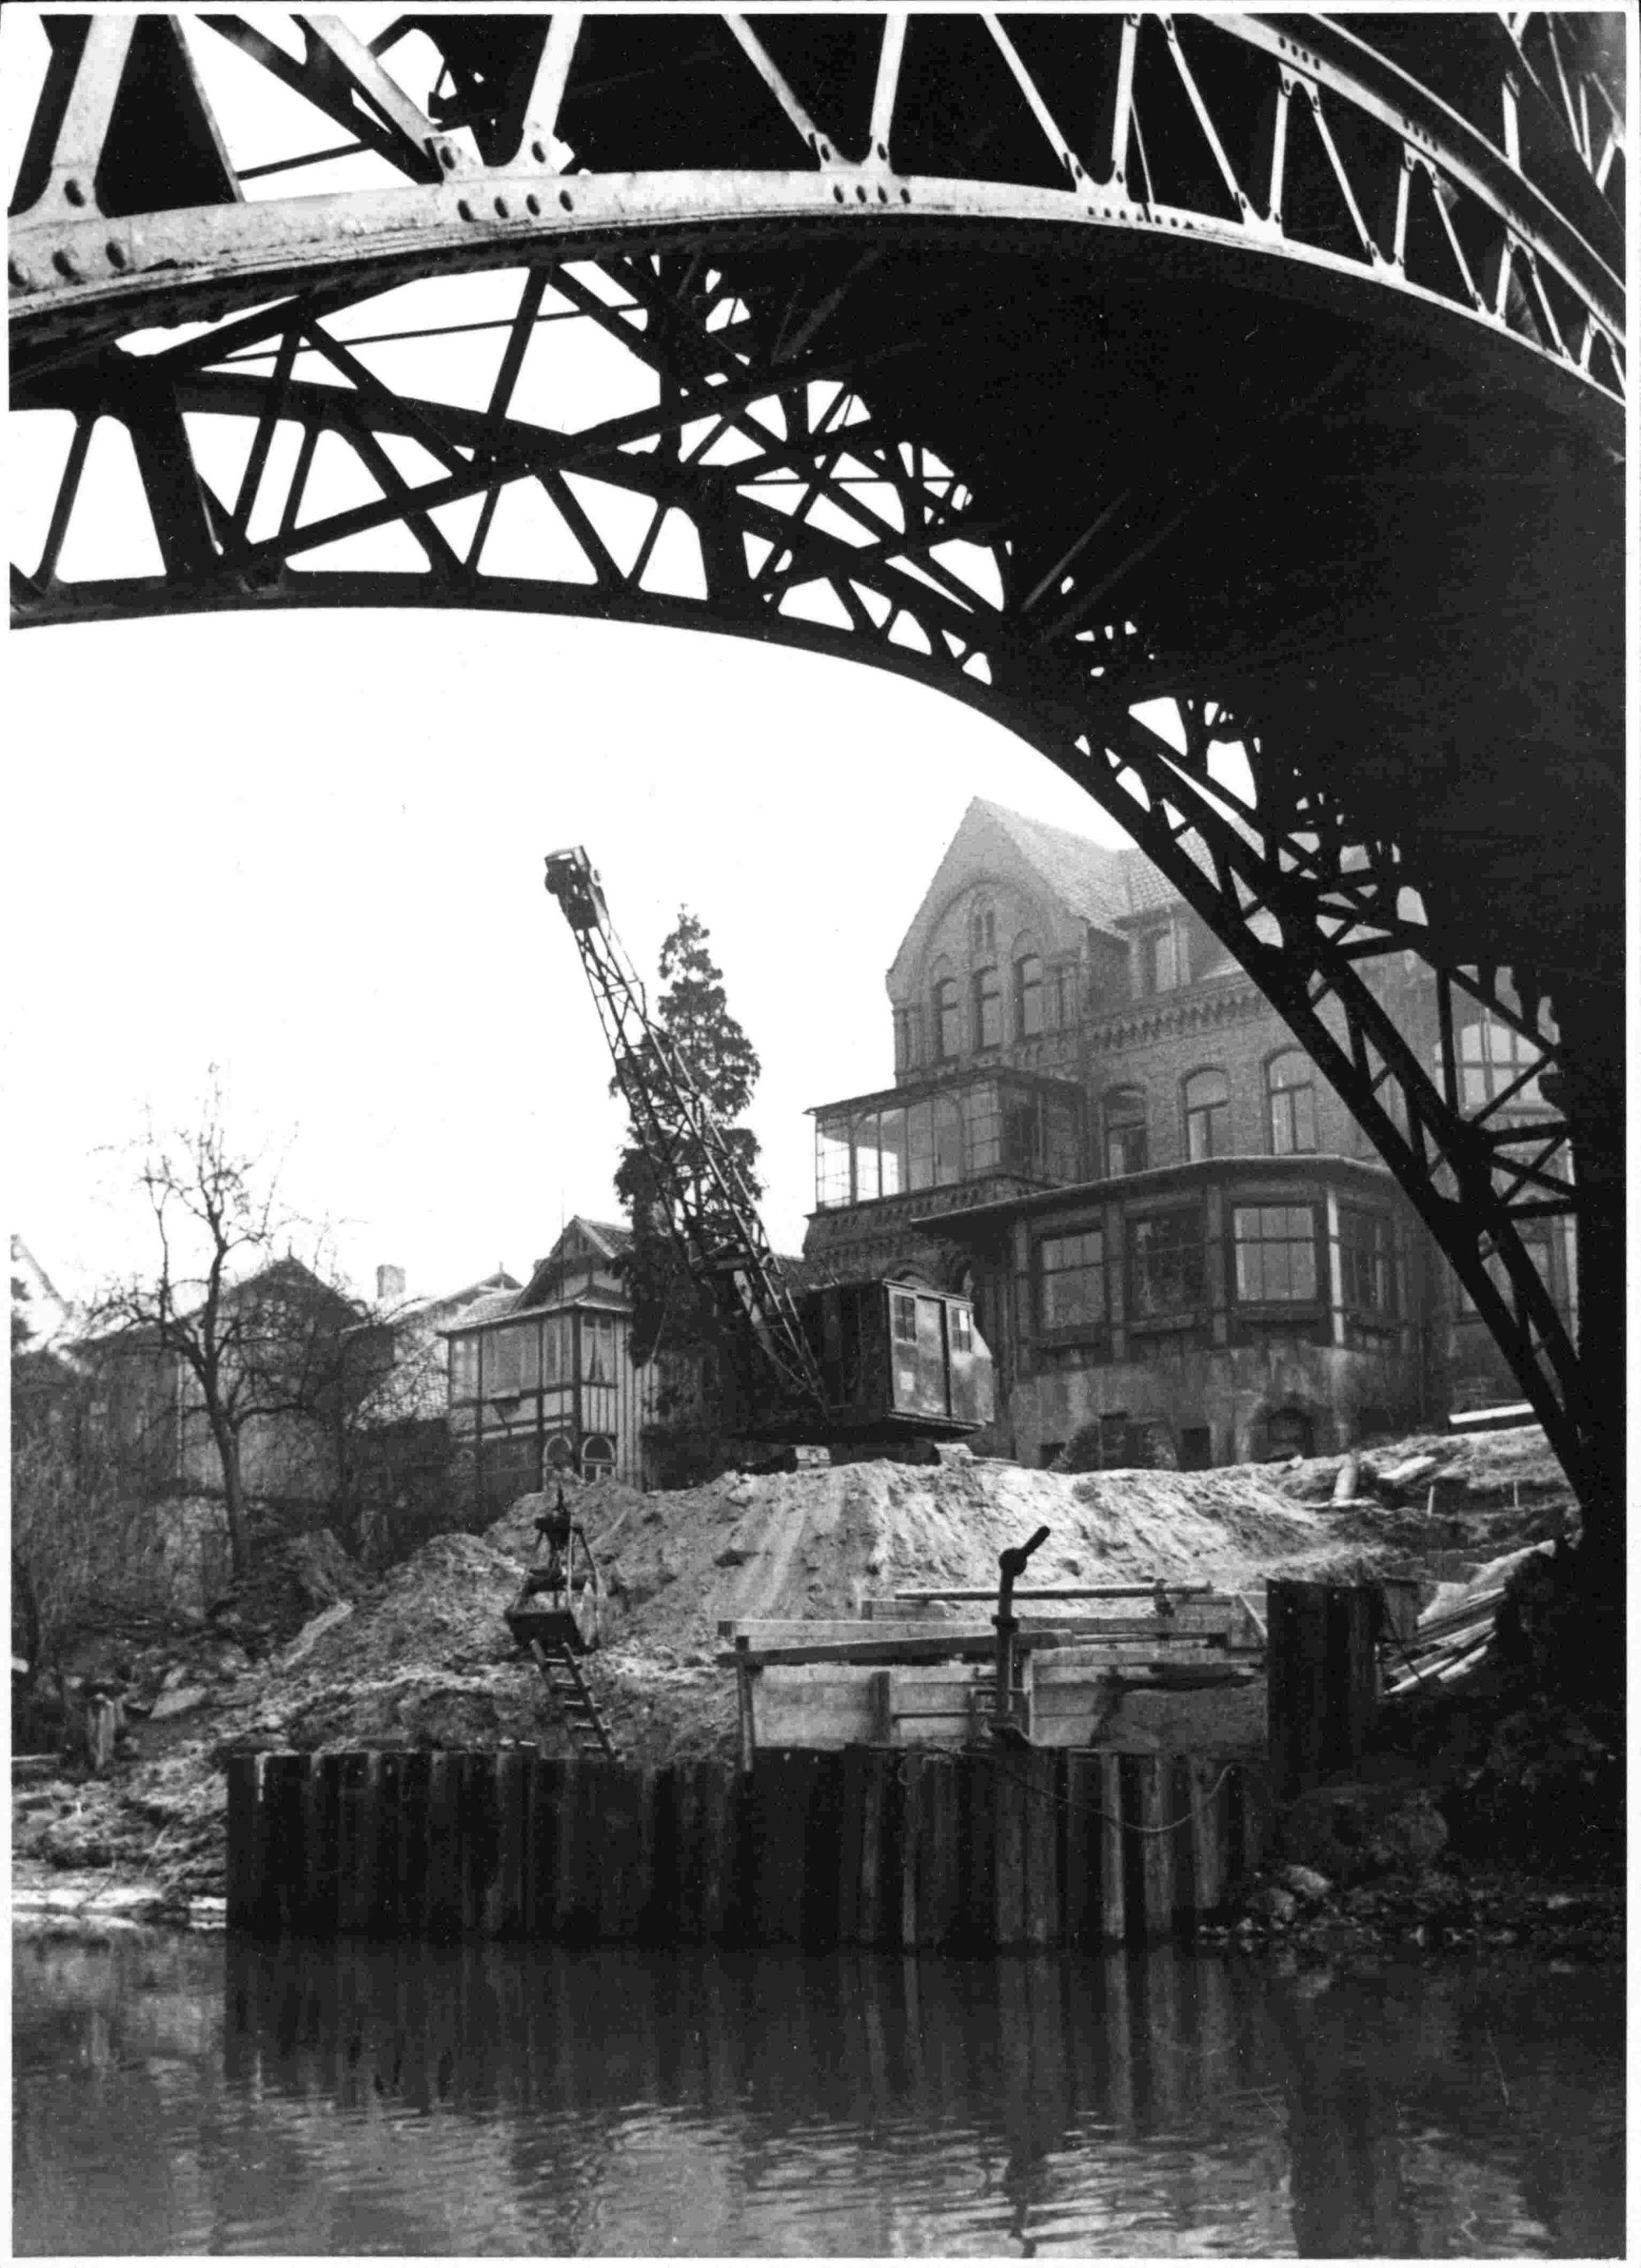 Ottmerbrücke, Baubeginn der Brücke Kurt-Schumacher-Straße, 1958 (Wird bei Klick vergrößert)